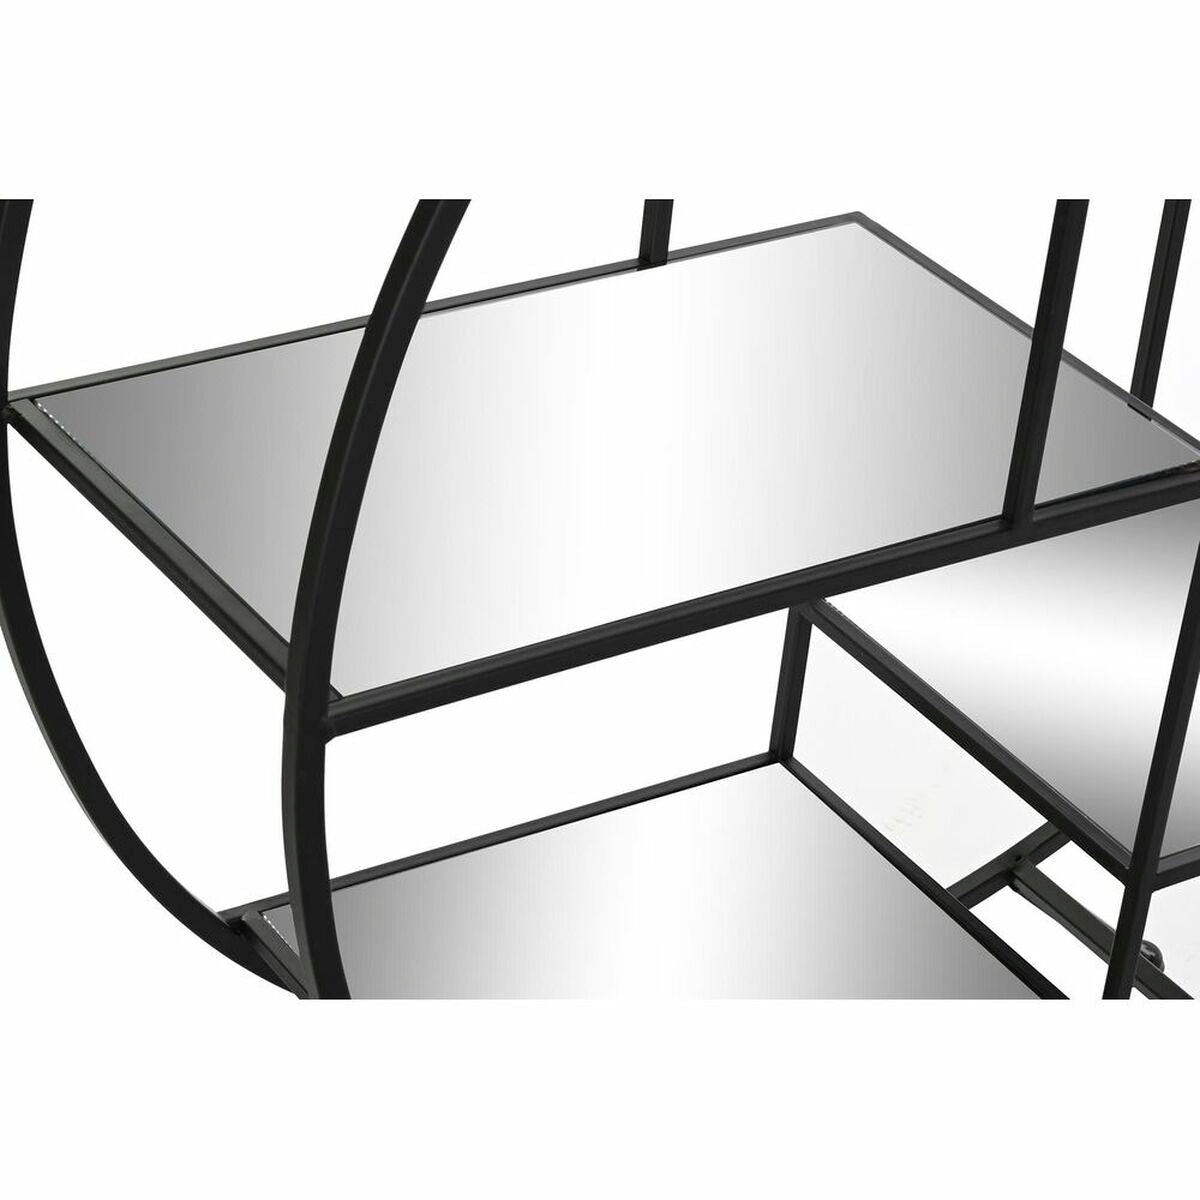 Estantería Estilo Loft Home Decor Espejo Metal Negro 4 Baldas (95 x 27 x 105 cm)